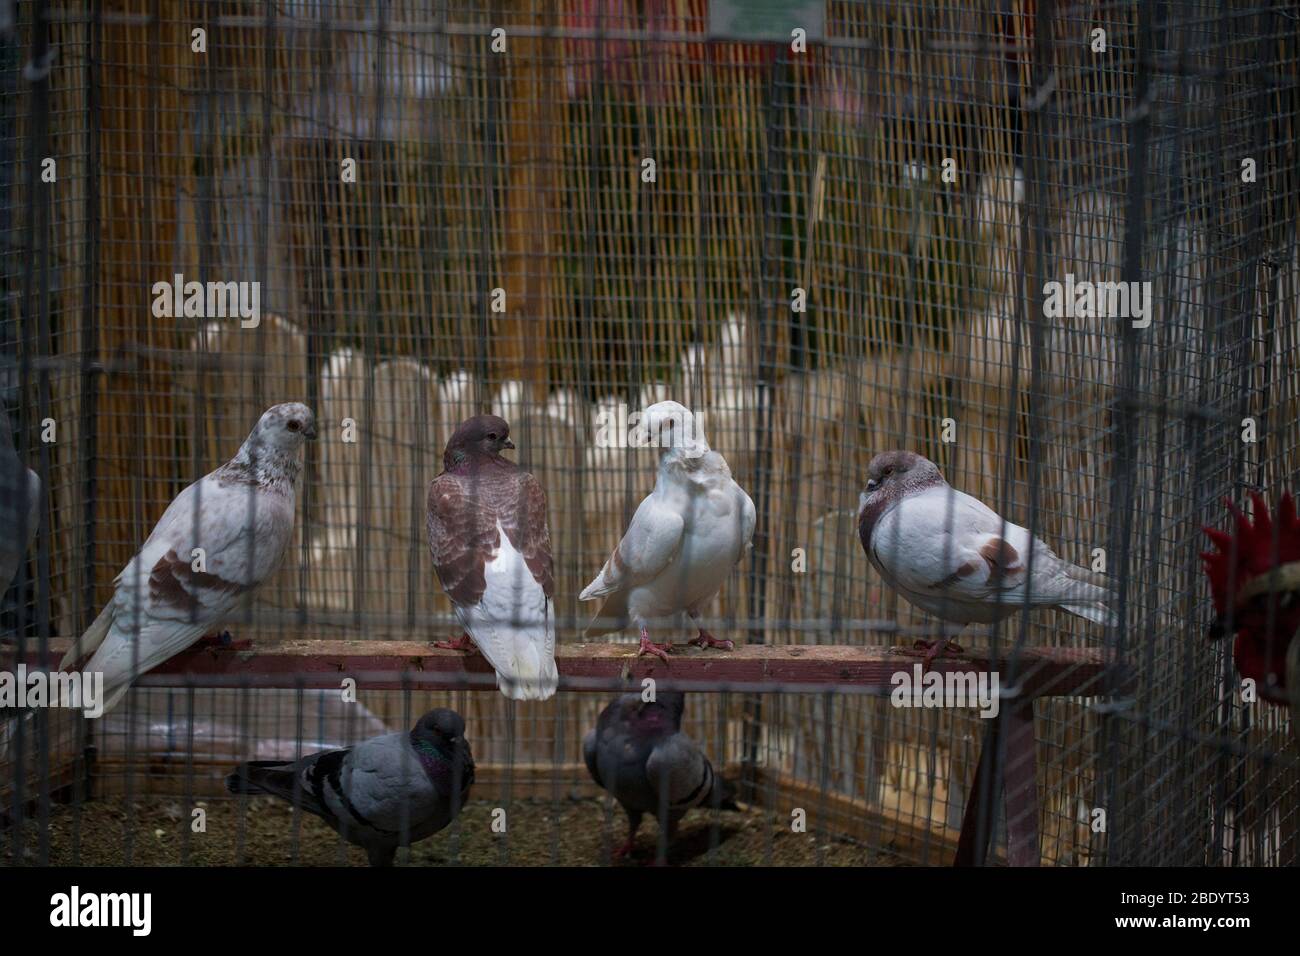 Palomas en una jaula en la exposición Foto de stock